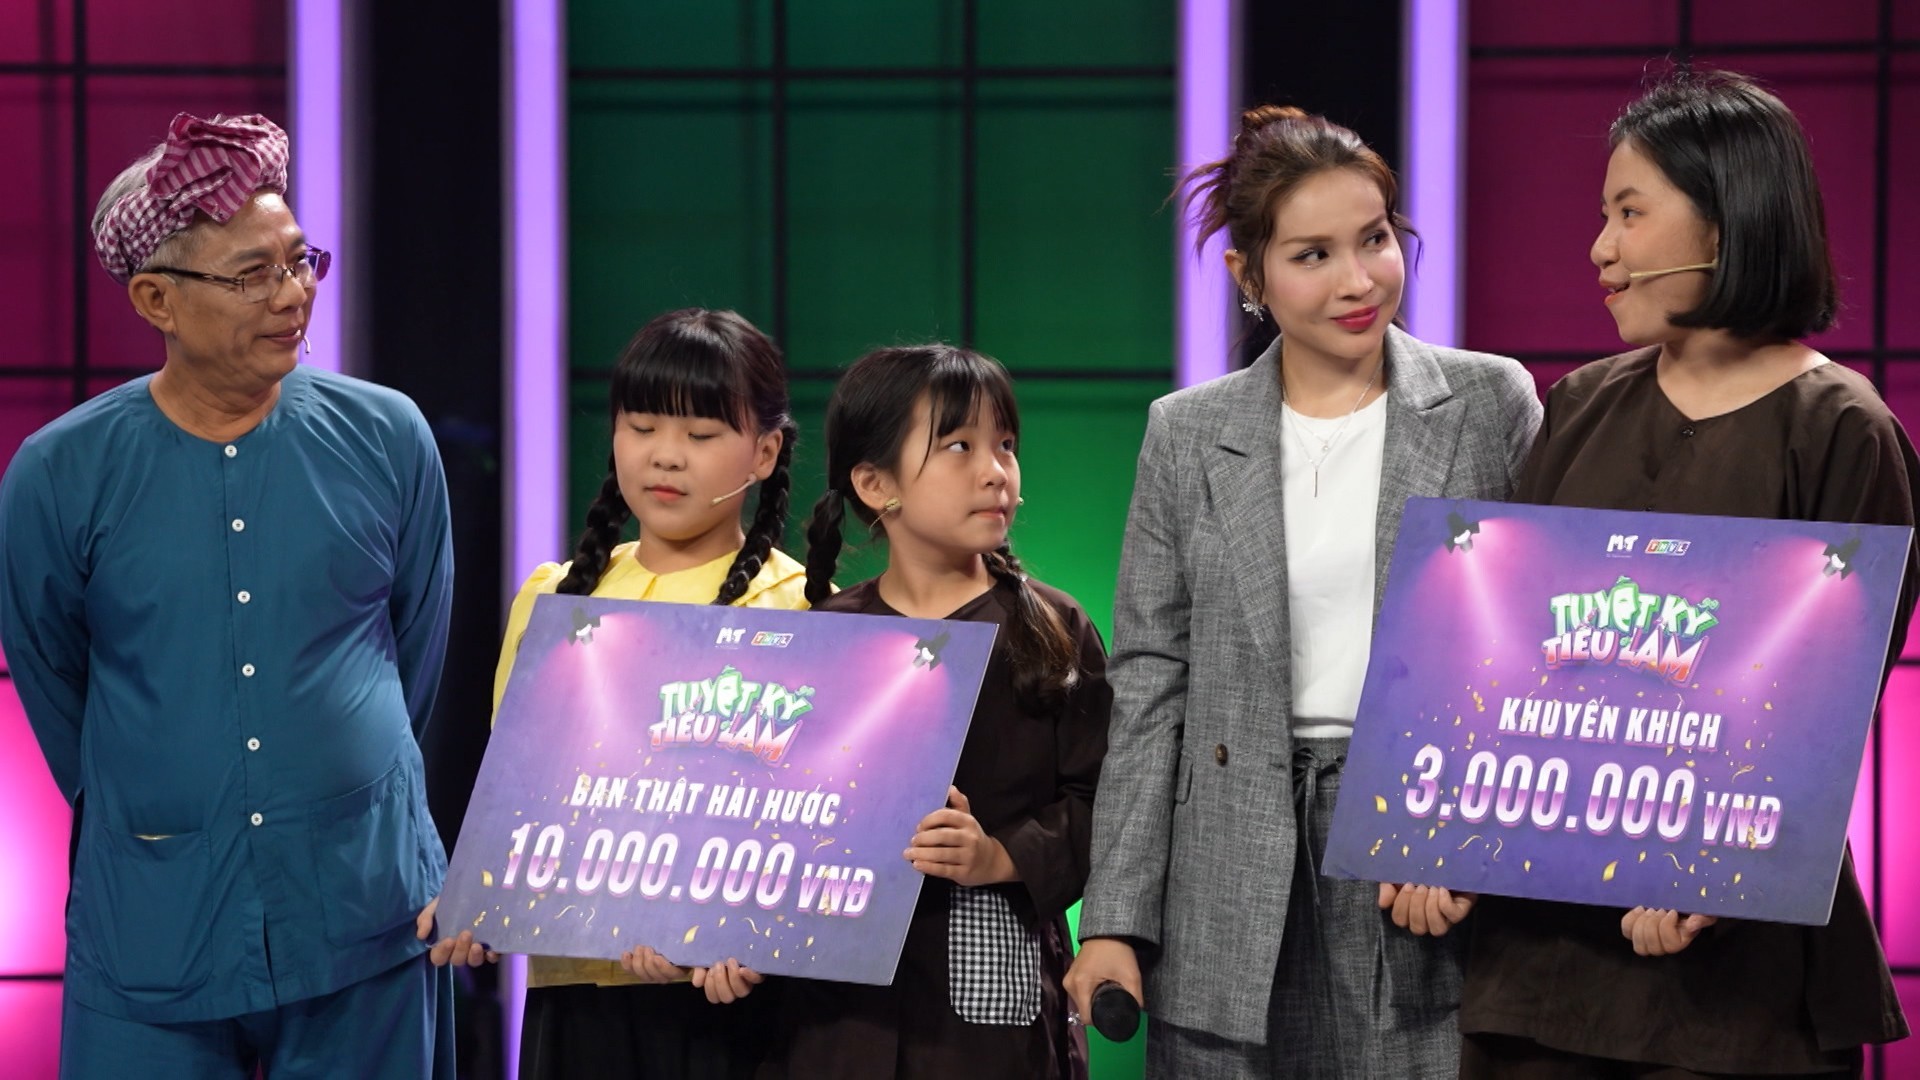 Cặp thí sinh nhí Chi Hân - My Hân giành chiến thắng tại tập 3 'Tuyệt kỹ tiếu lâm'